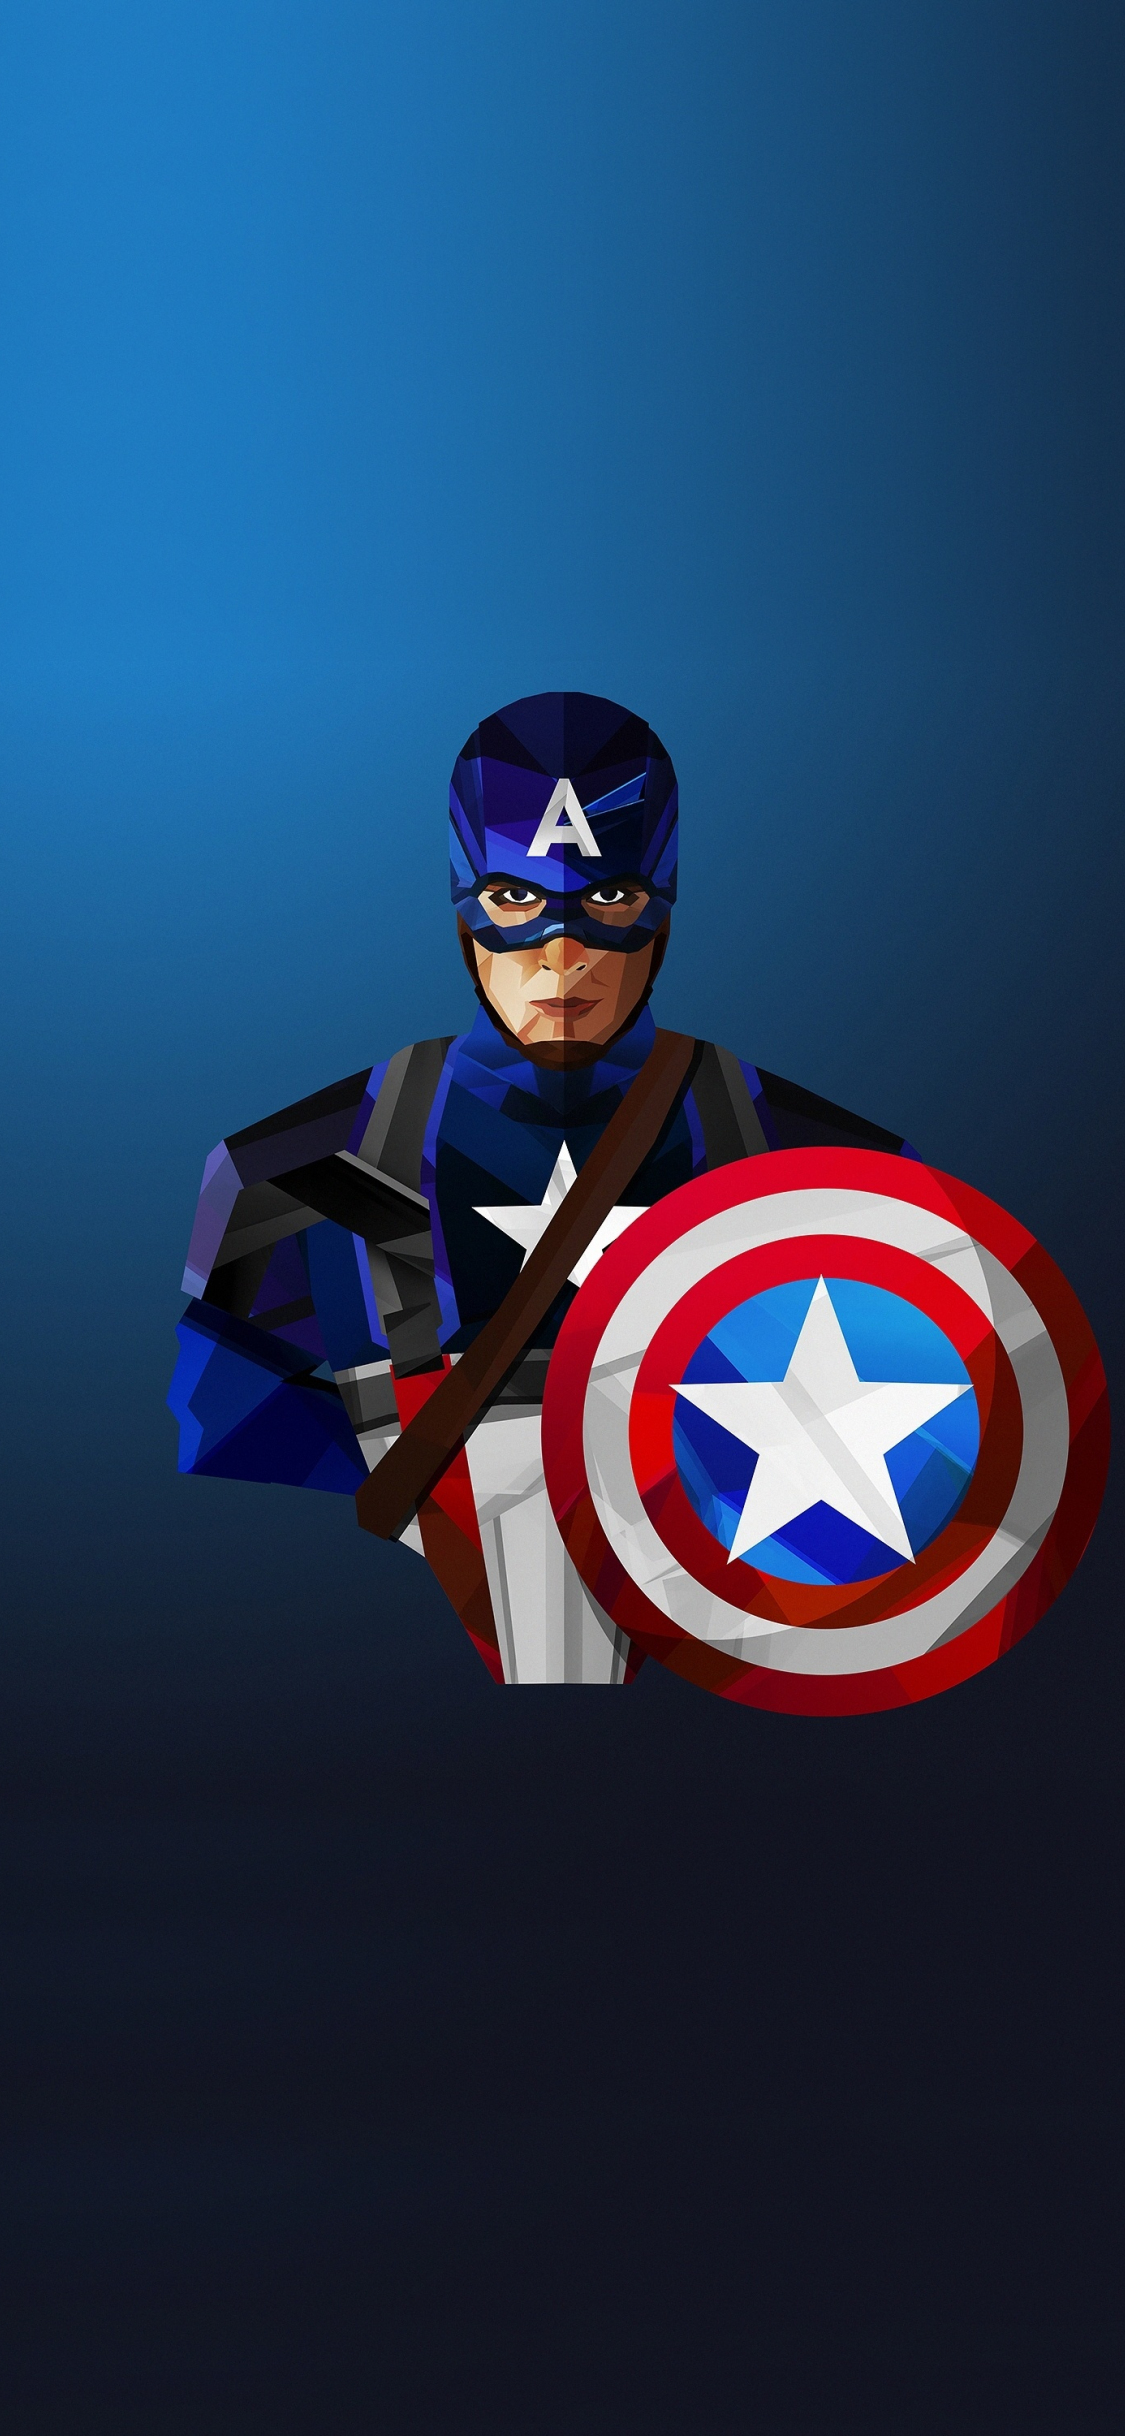 Download 1125x2436 Wallpaper Captain America Artwork Low